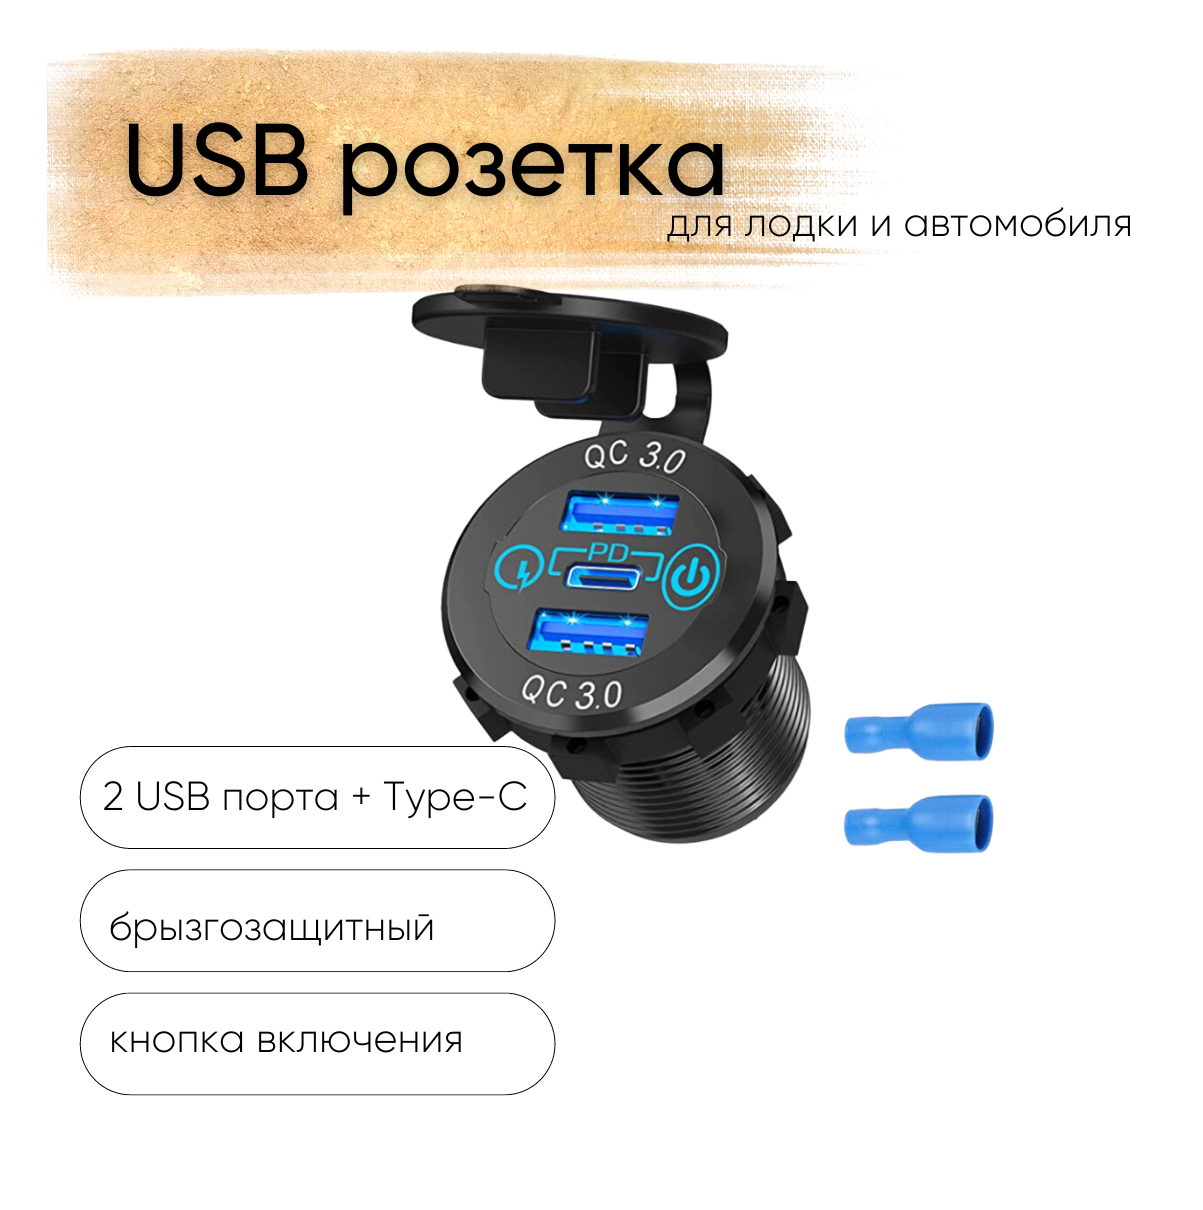 Розетка 12V / 24V USB 2 шт + Type-C быстрая зарядка + кнопка включения, 3 выхода QC 3.0, PD, круглая, цвет синий